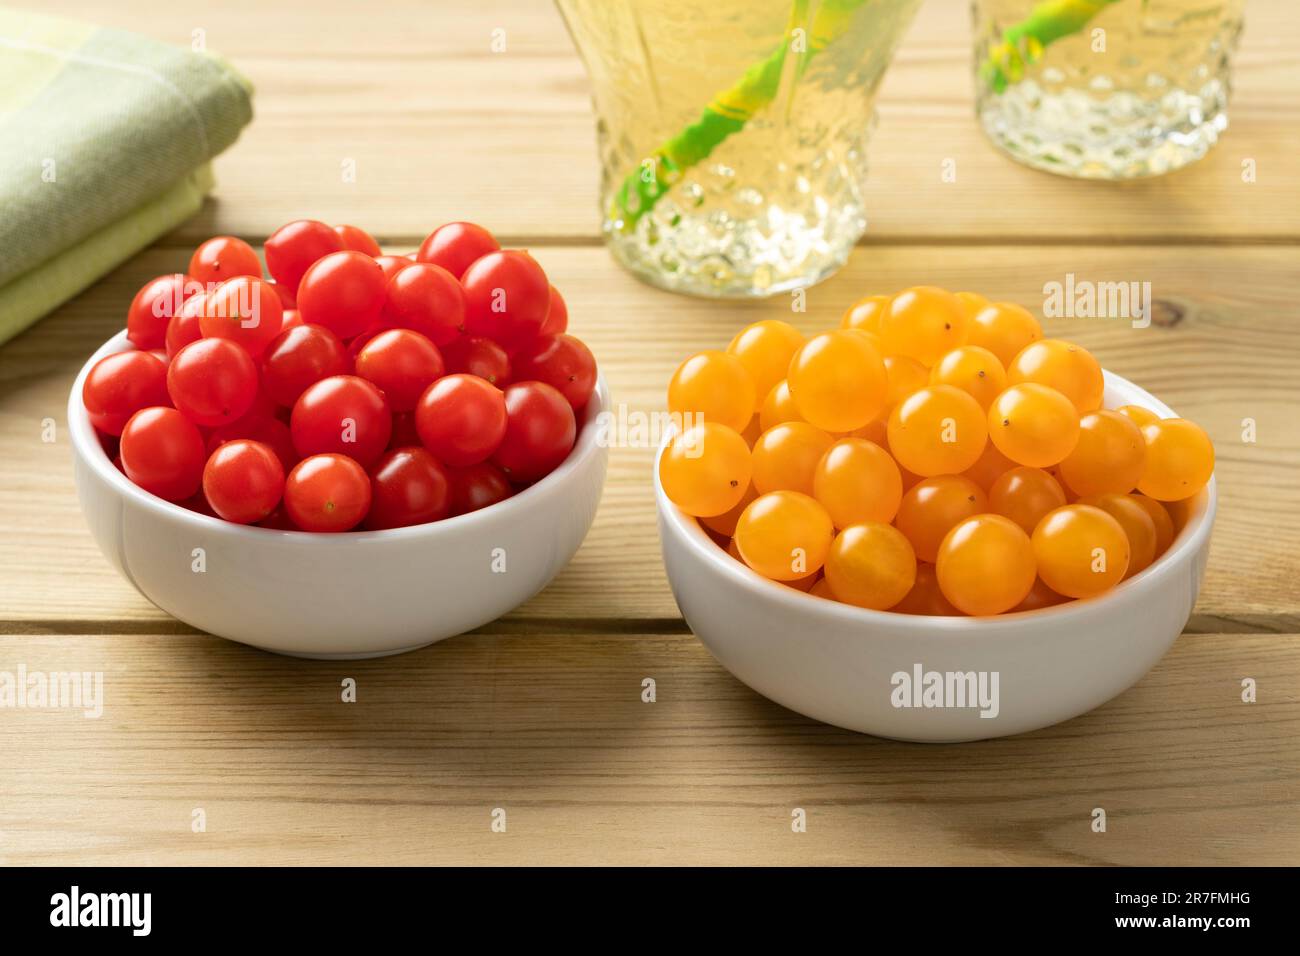 Gros plan sur des bols blancs avec des tomates Tombereau rouges et jaunes fraîches Banque D'Images